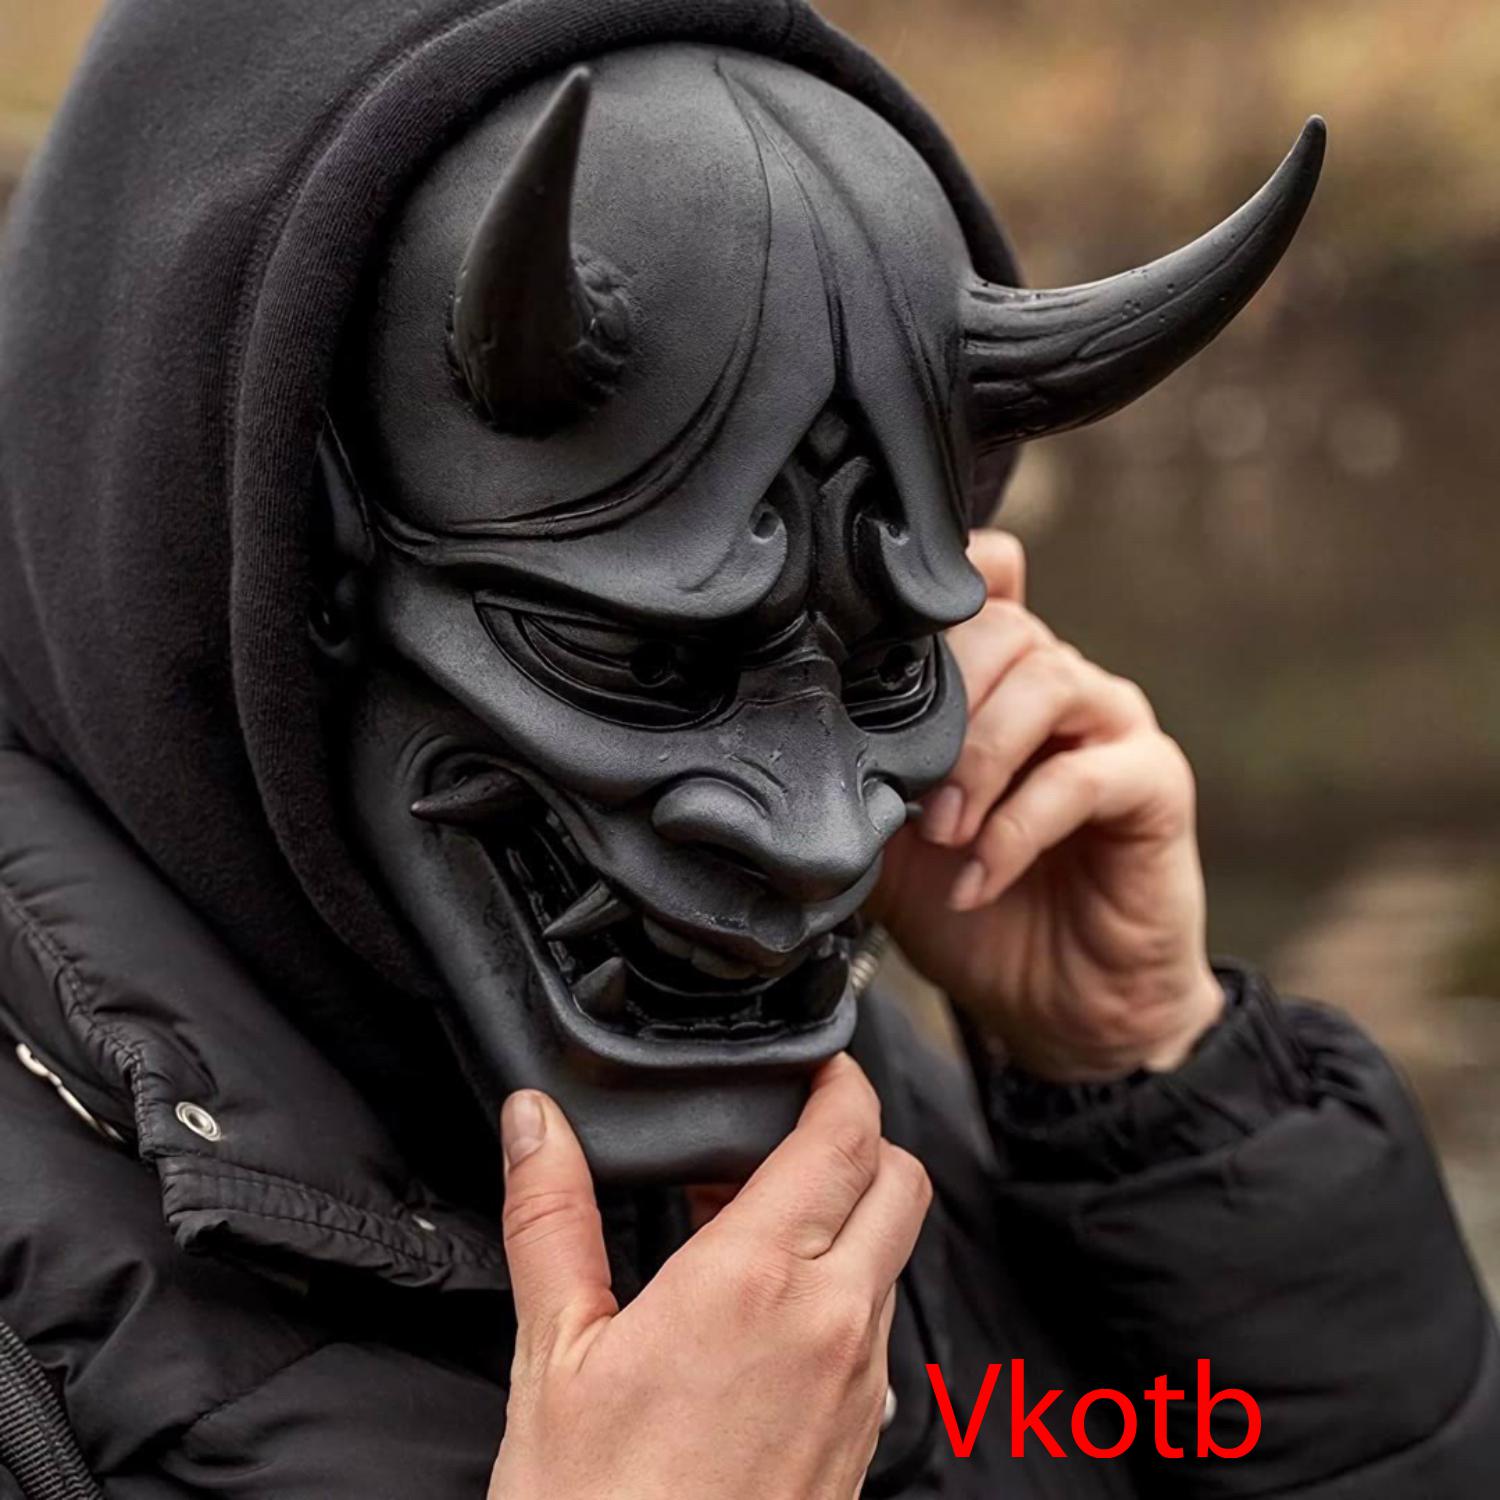 Vkotb - 鱿鱼游戏(DJ)